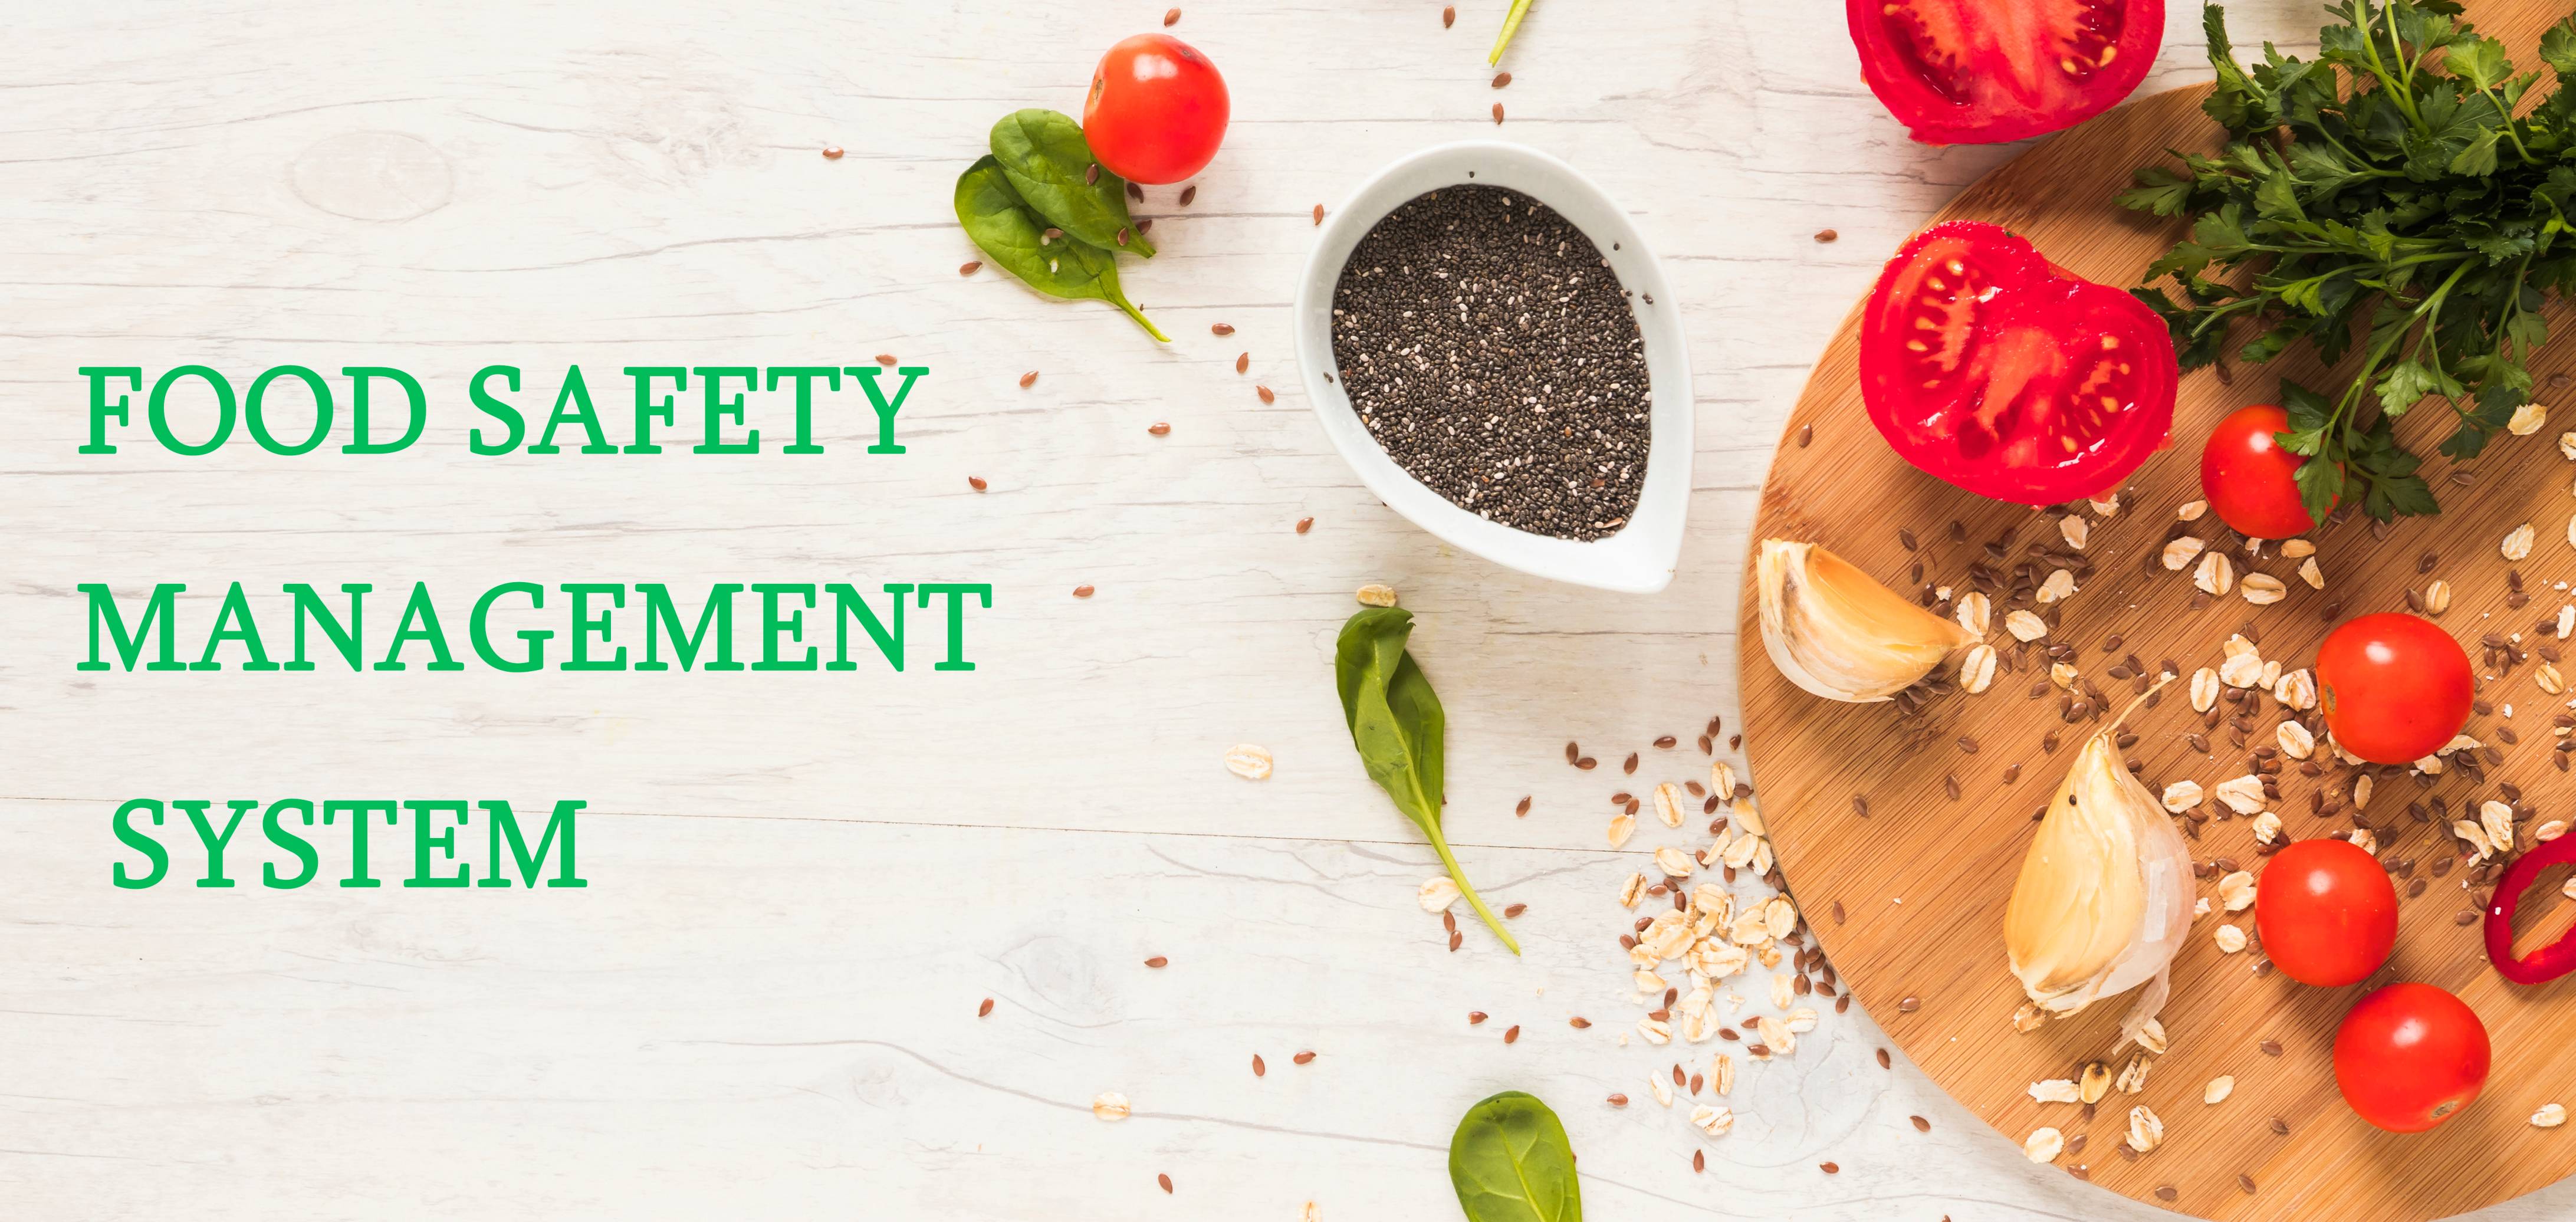 food safety management system presentation